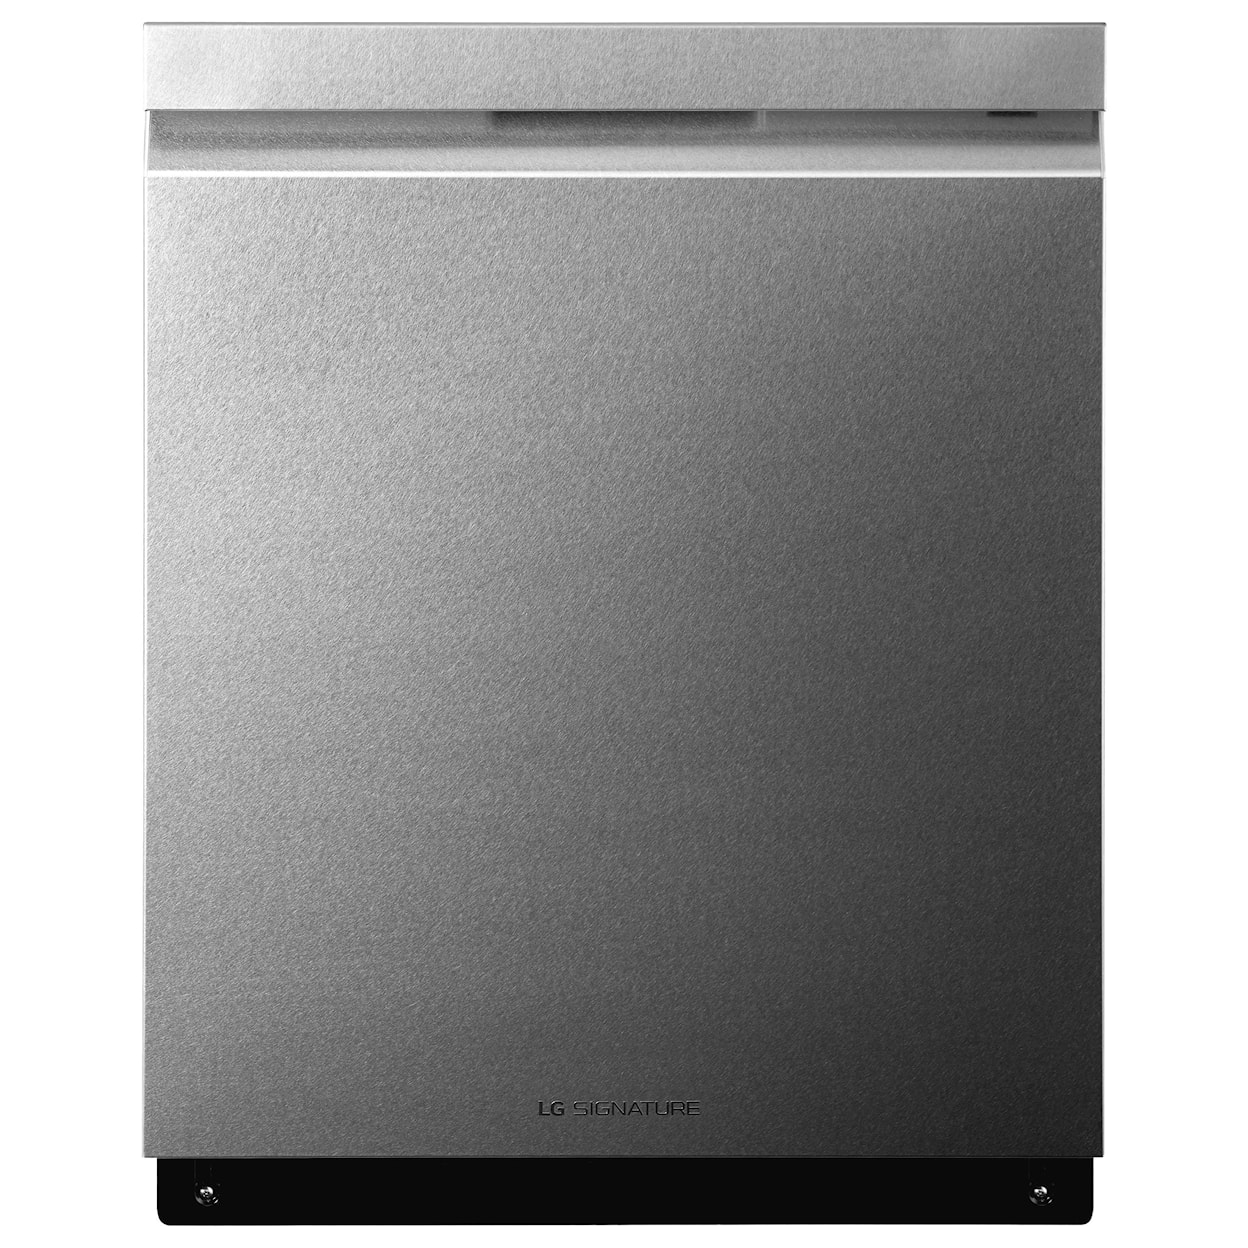 LG Appliances Dishwashers LG SIGNATURE Top Control Dishwasher